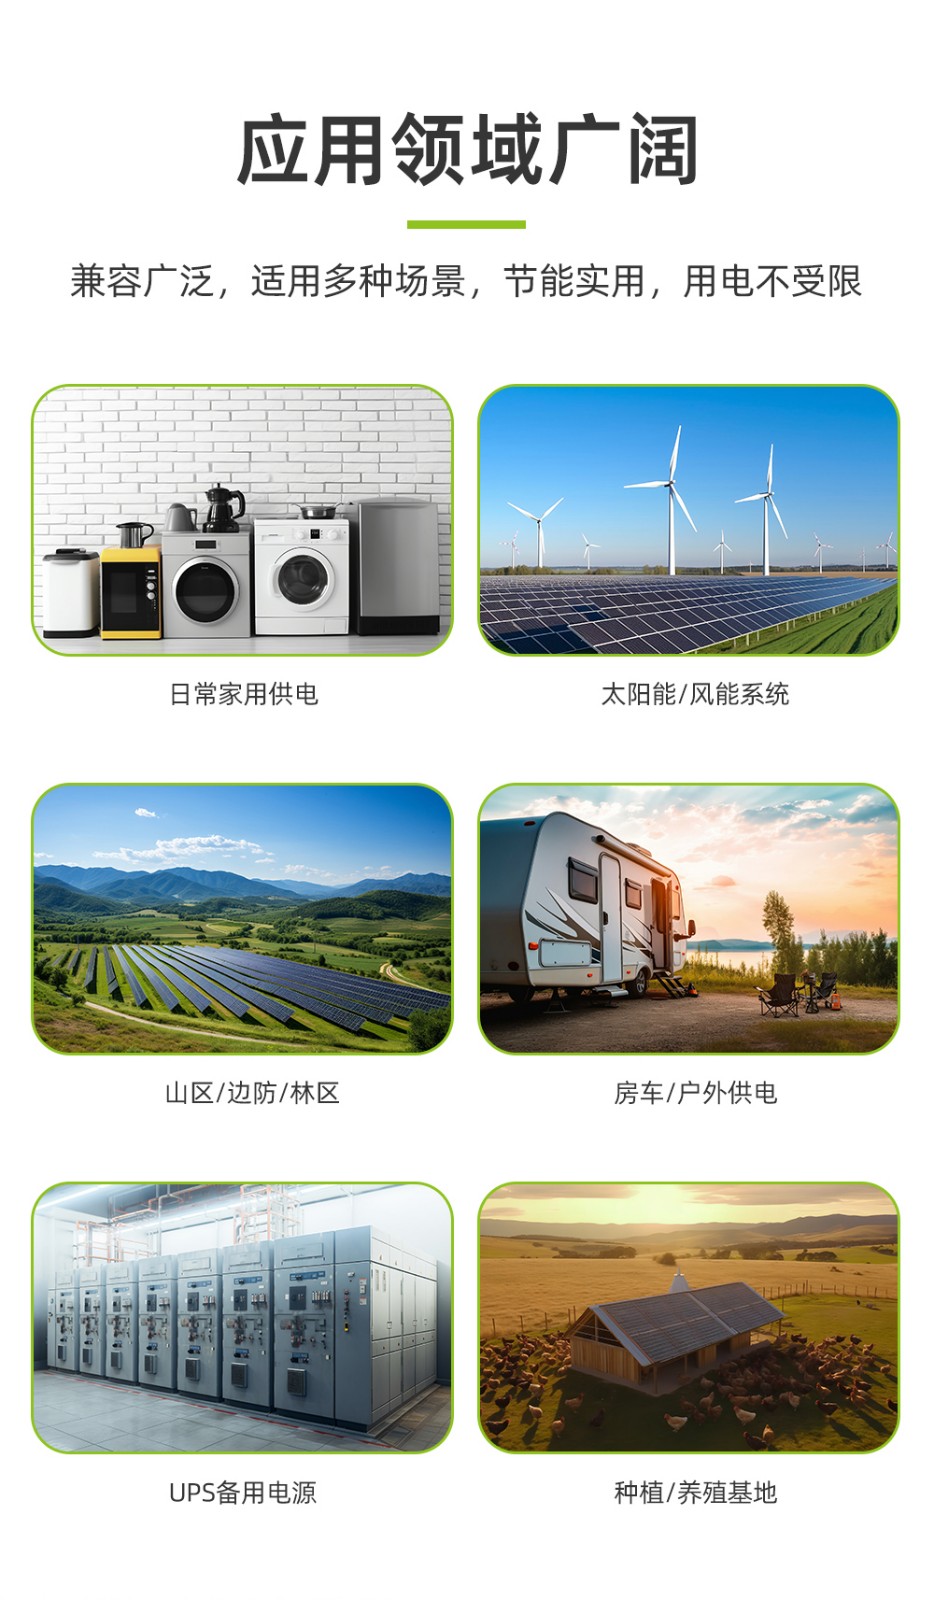 新葡萄新京B500-3 15度电太阳能家庭储能电源_06